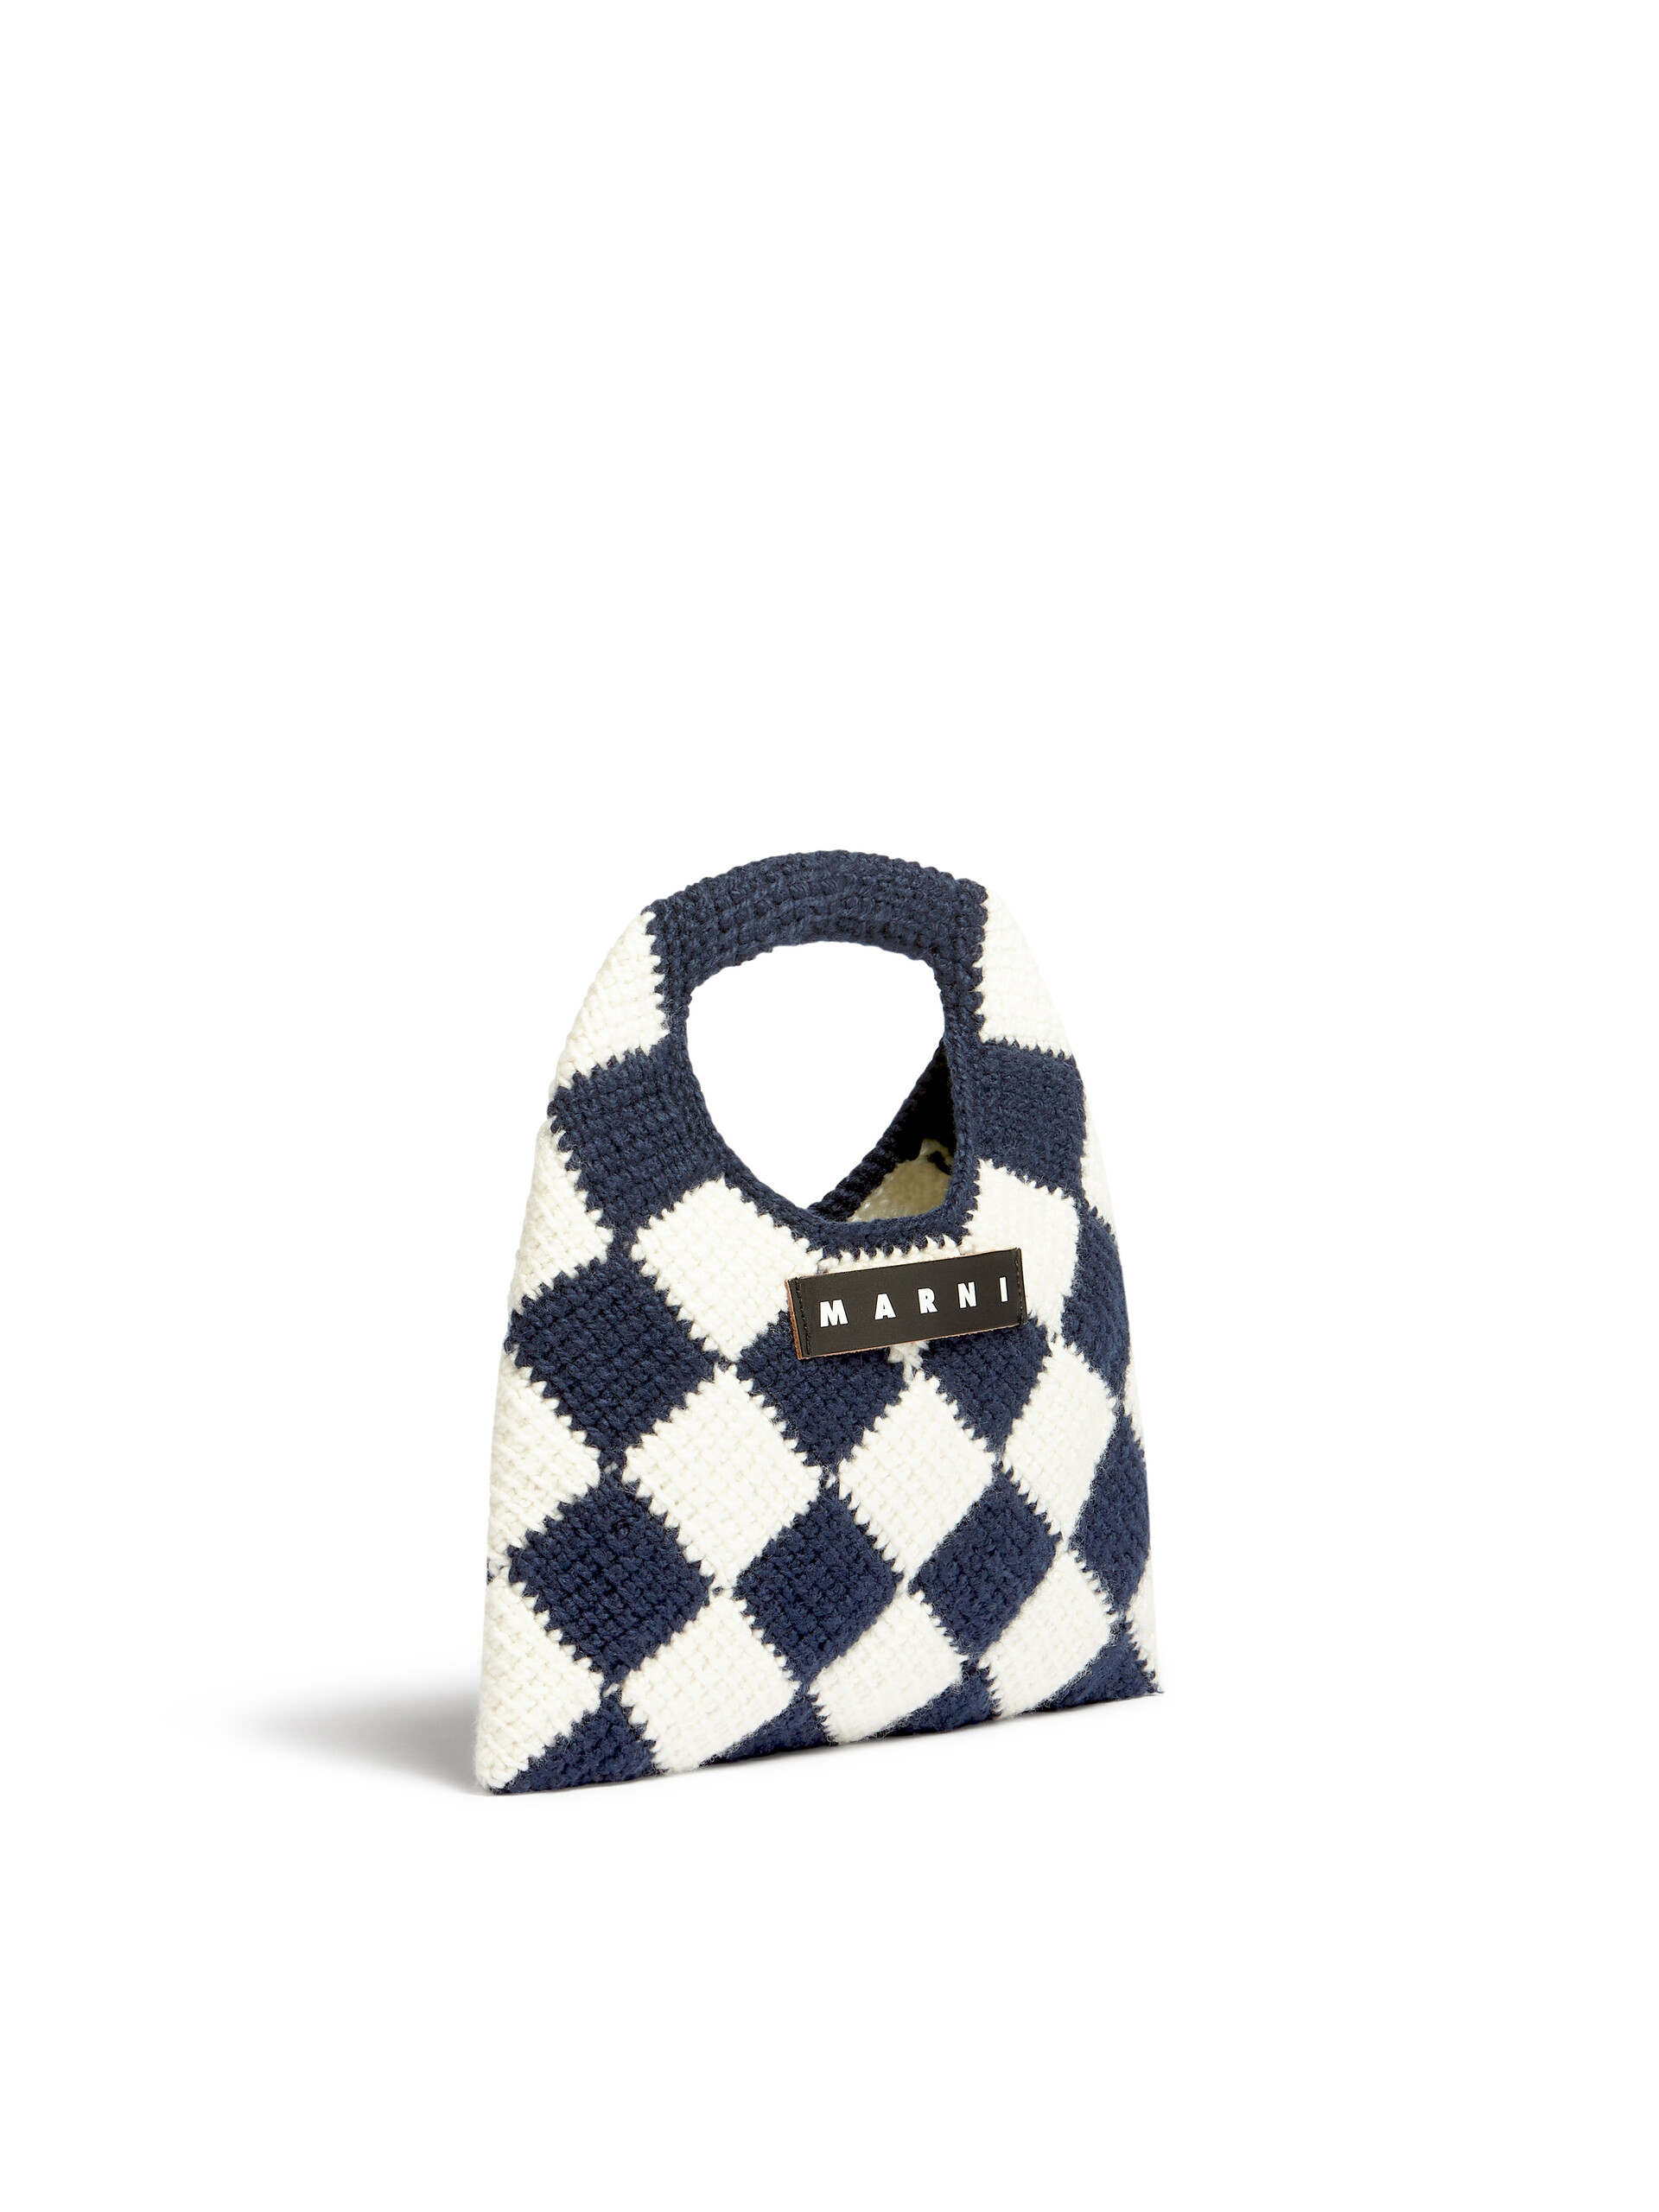 Mittelgroße MARNI MARKET DIAMOND Tasche aus technischer Wolle in Blau und Braun - Taschen - Image 2